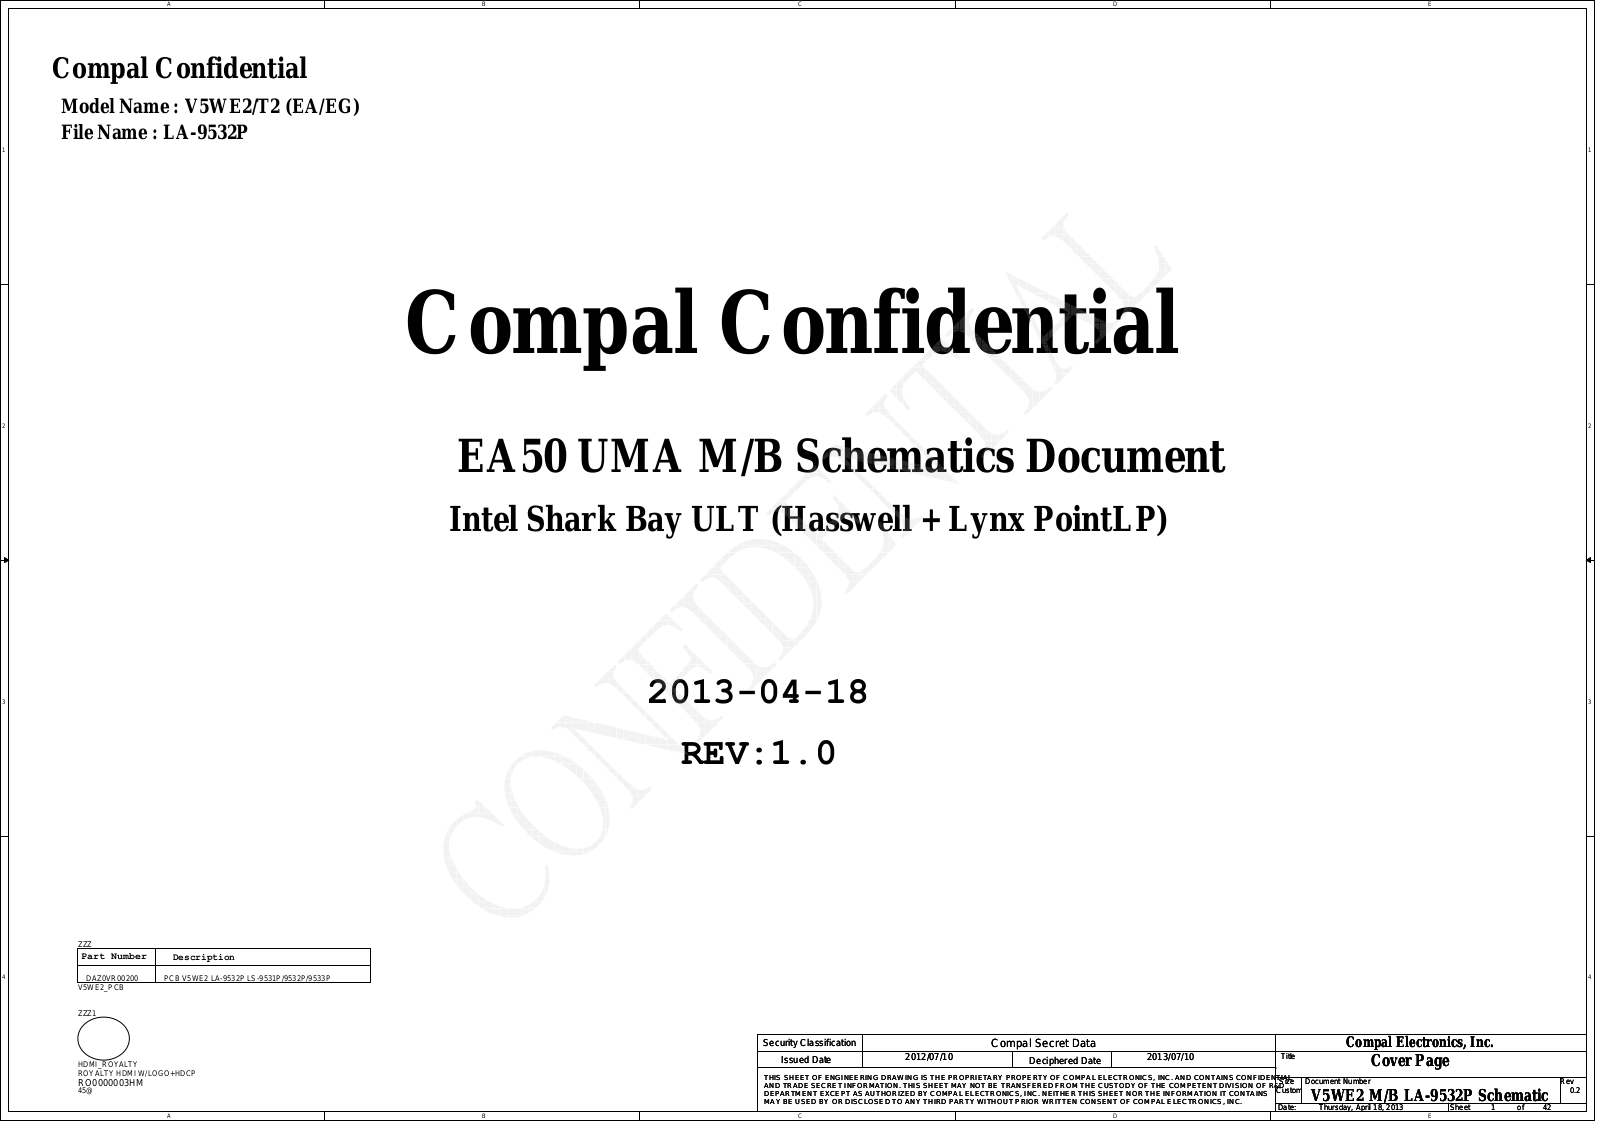 Compal LA-9532P V5WE2 EA50 UMA, Aspire E1-532, EasyNote TE69HW, LA-9532P V5WT2 (EA, EG) EA50 UMA Schematic